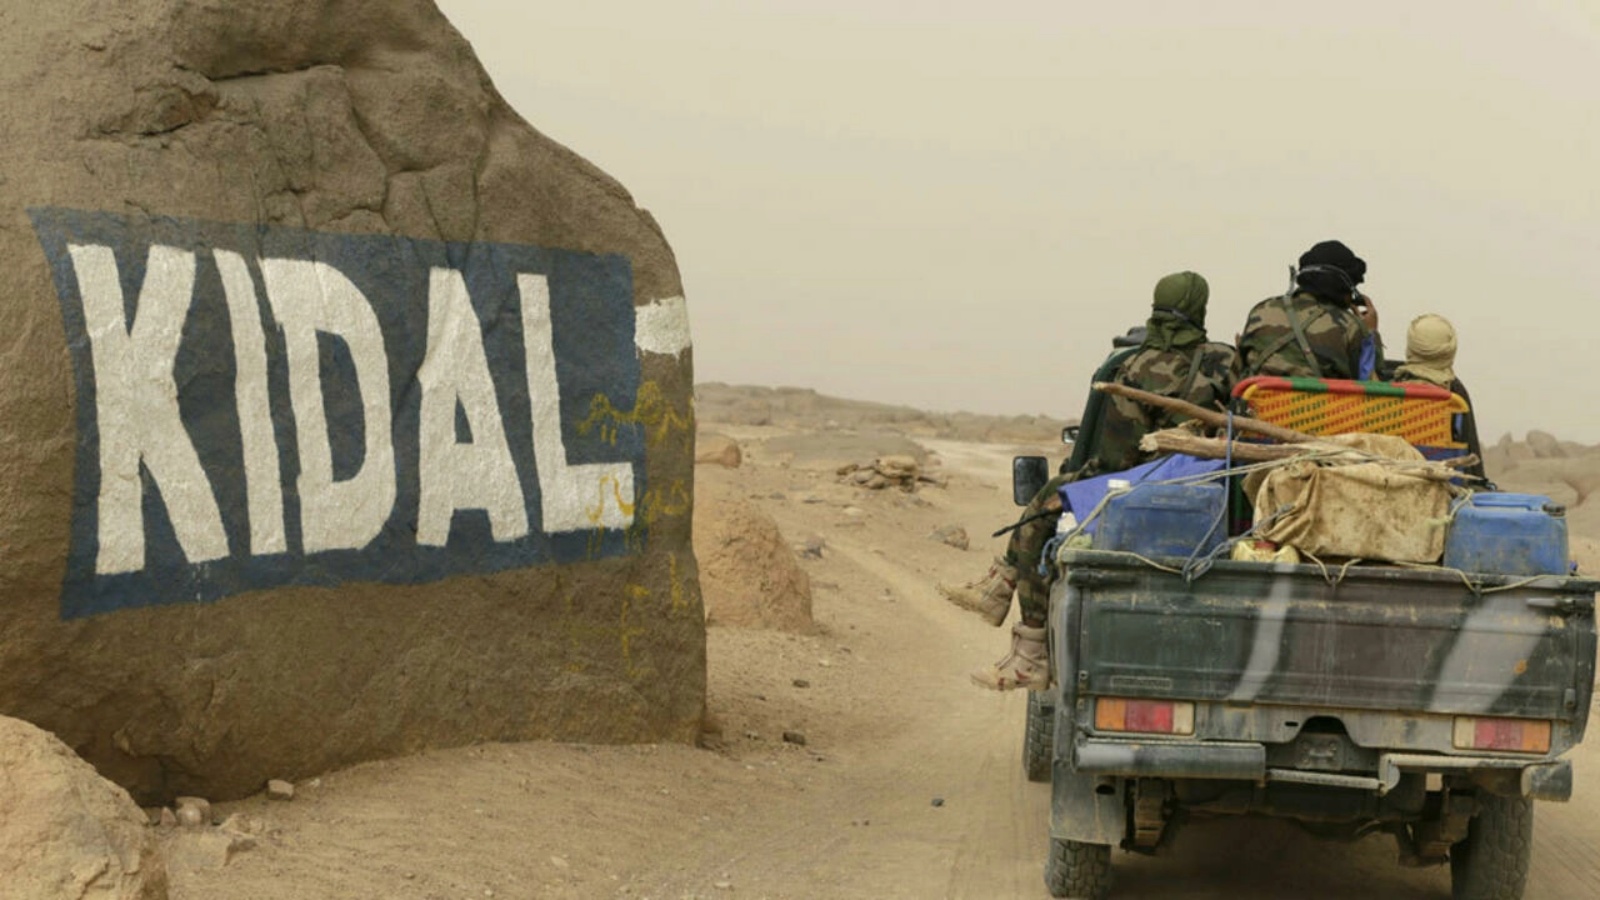 آلية عسكرية في مدينة كيدال شمال مالي. (أرشيفية)